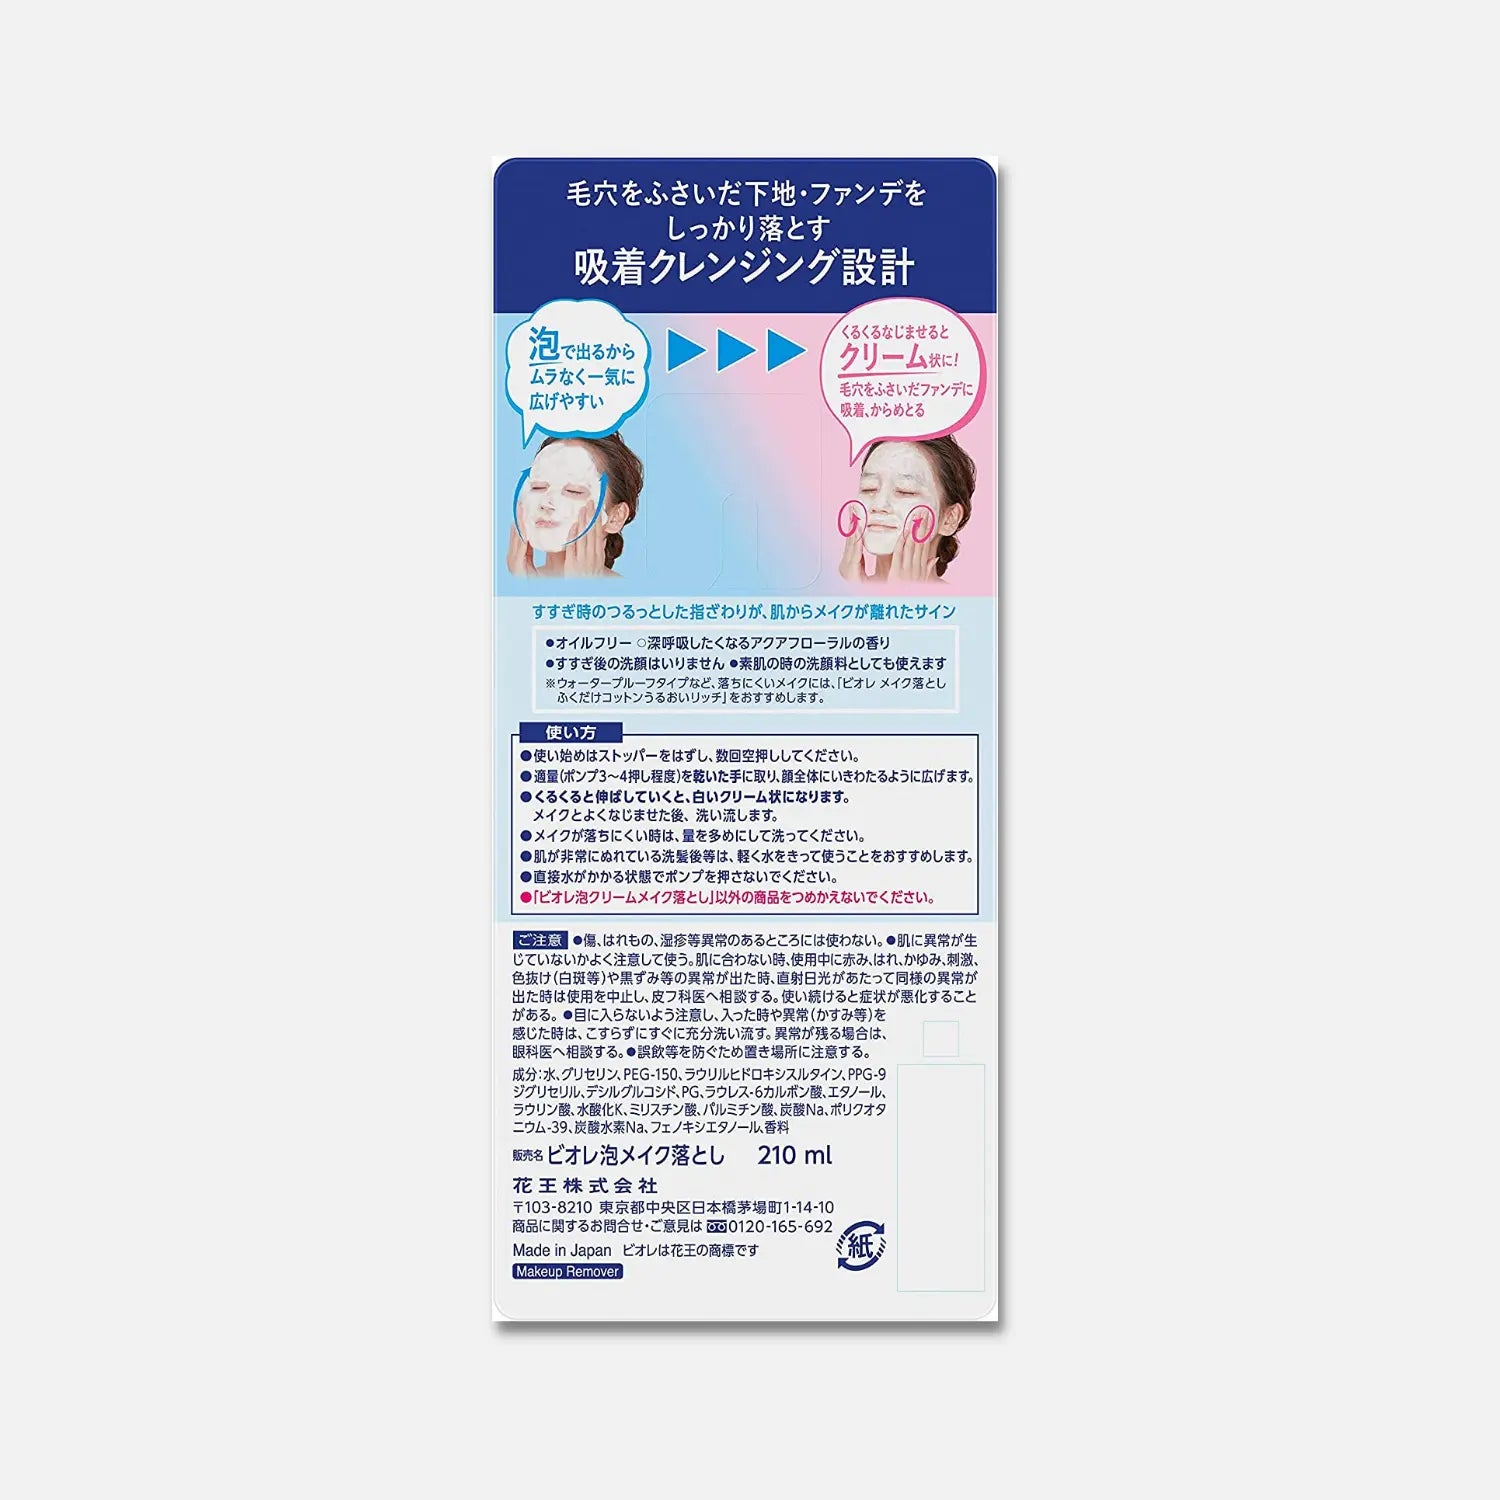 Biore Foaming Makeup Remover 210ml - Buy Me Japan